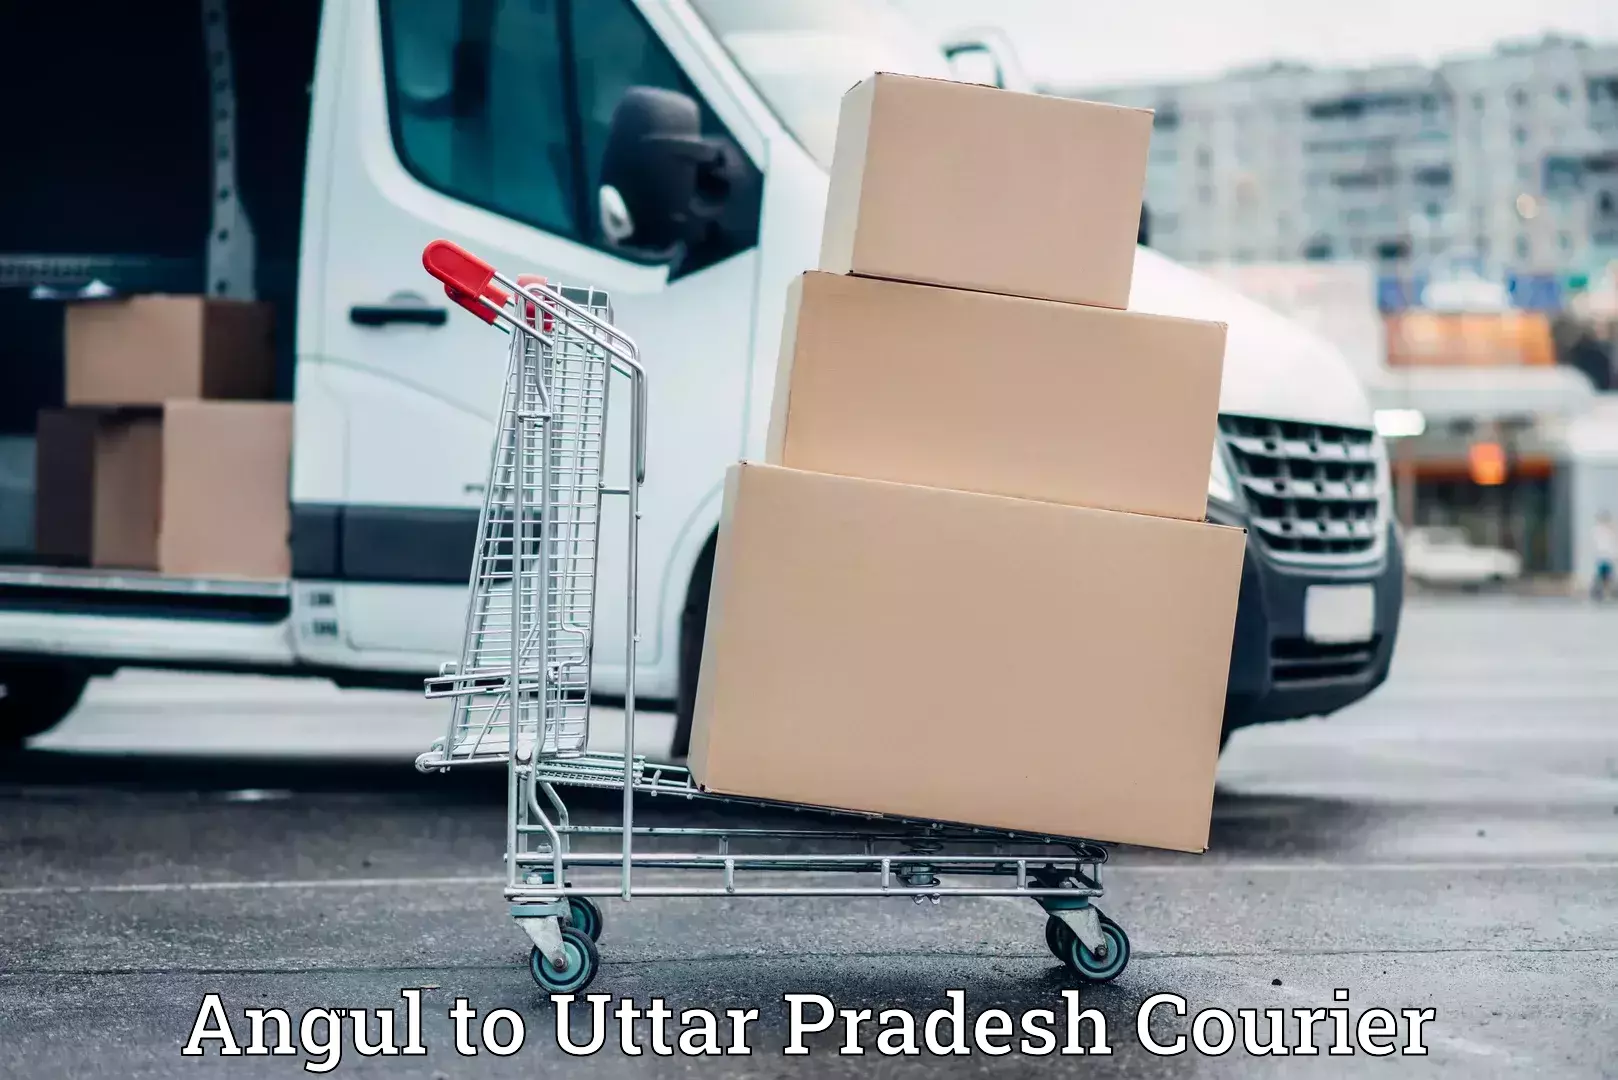 Hassle-free relocation Angul to Uttar Pradesh